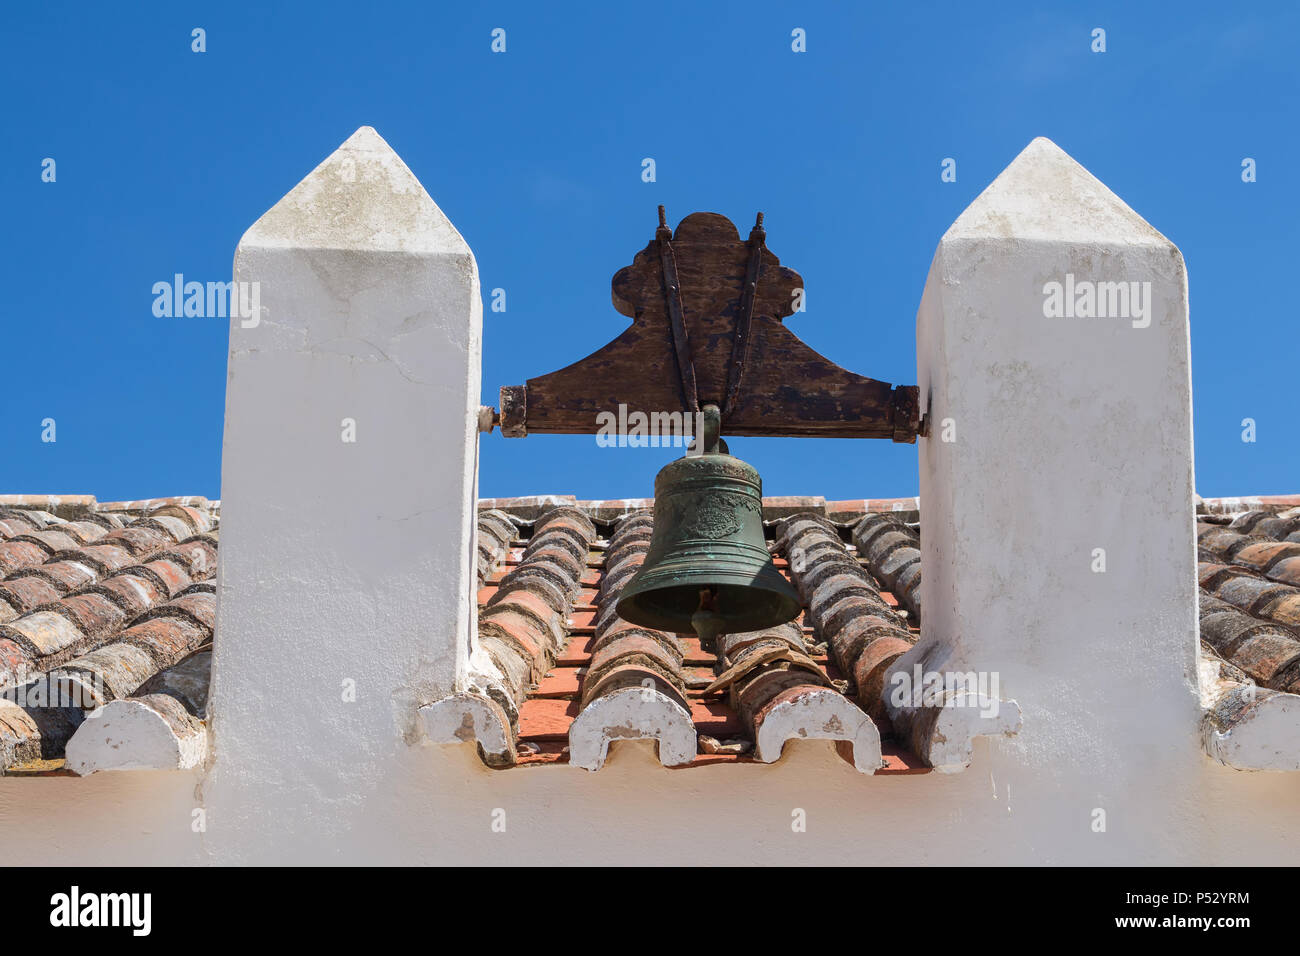 Dach einer alten Kirche Nossa Senhora da Rocha in Porches, Algarve, Portugal. Orange alte Dachziegel. Glockenturm mit einer Glocke. Strahlend blauen Himmel im Hinterg Stockfoto